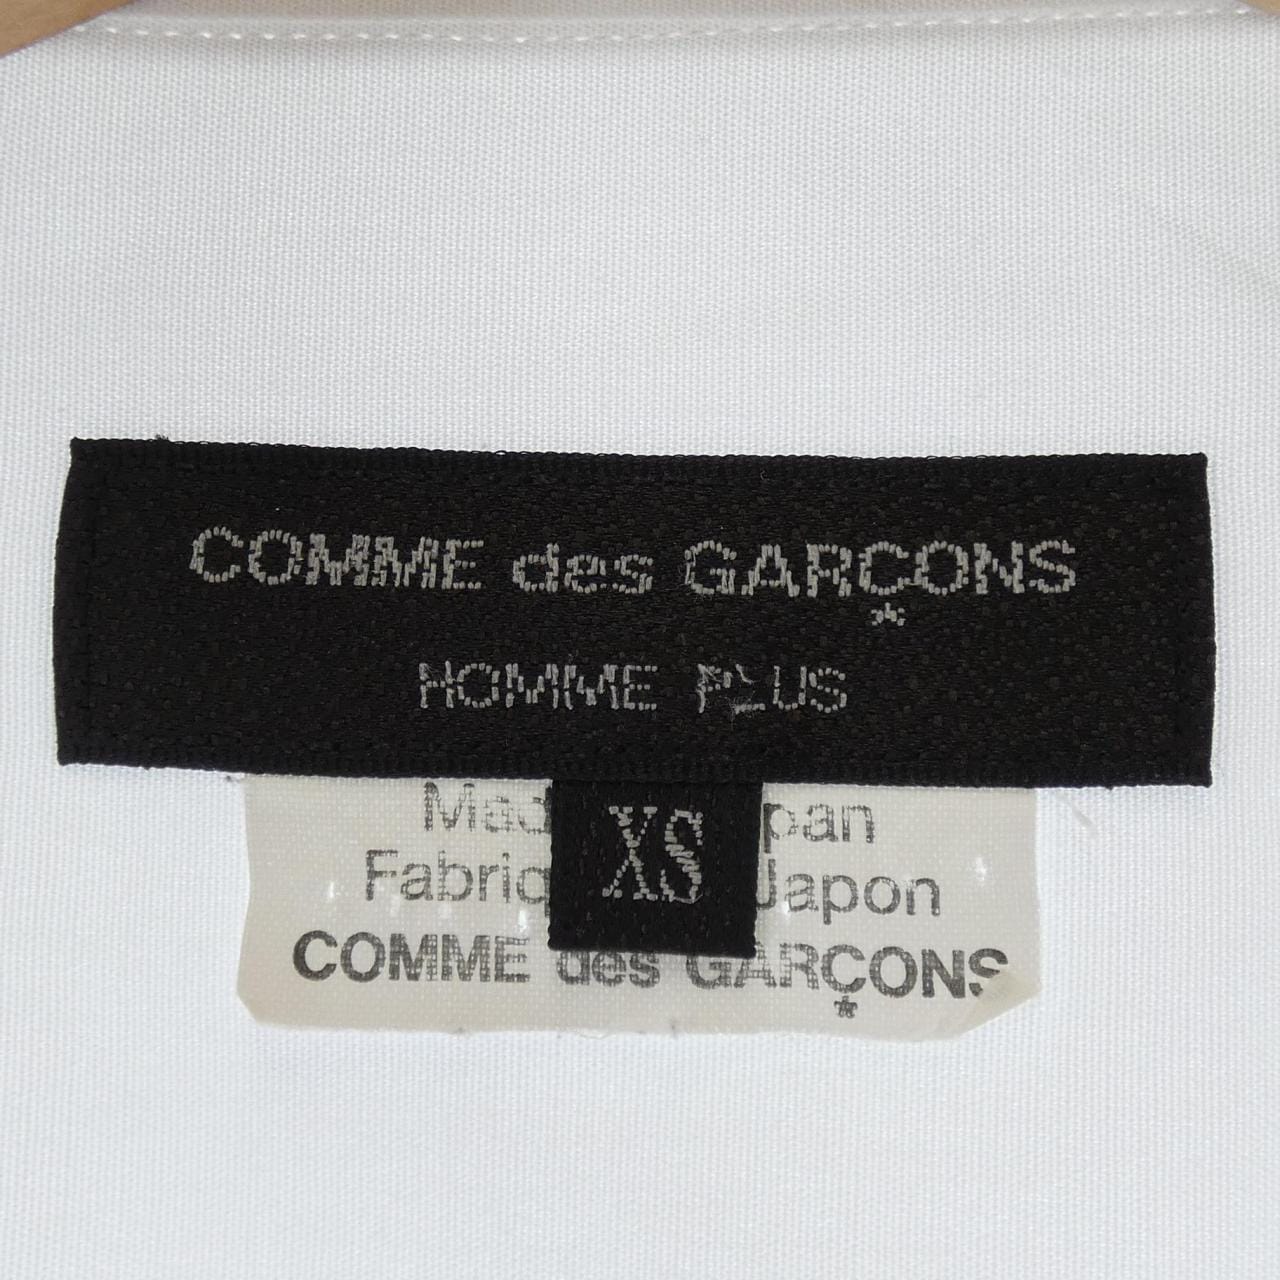 COMDEGALSONU PURUS GARCONS HOMME plus衬衫